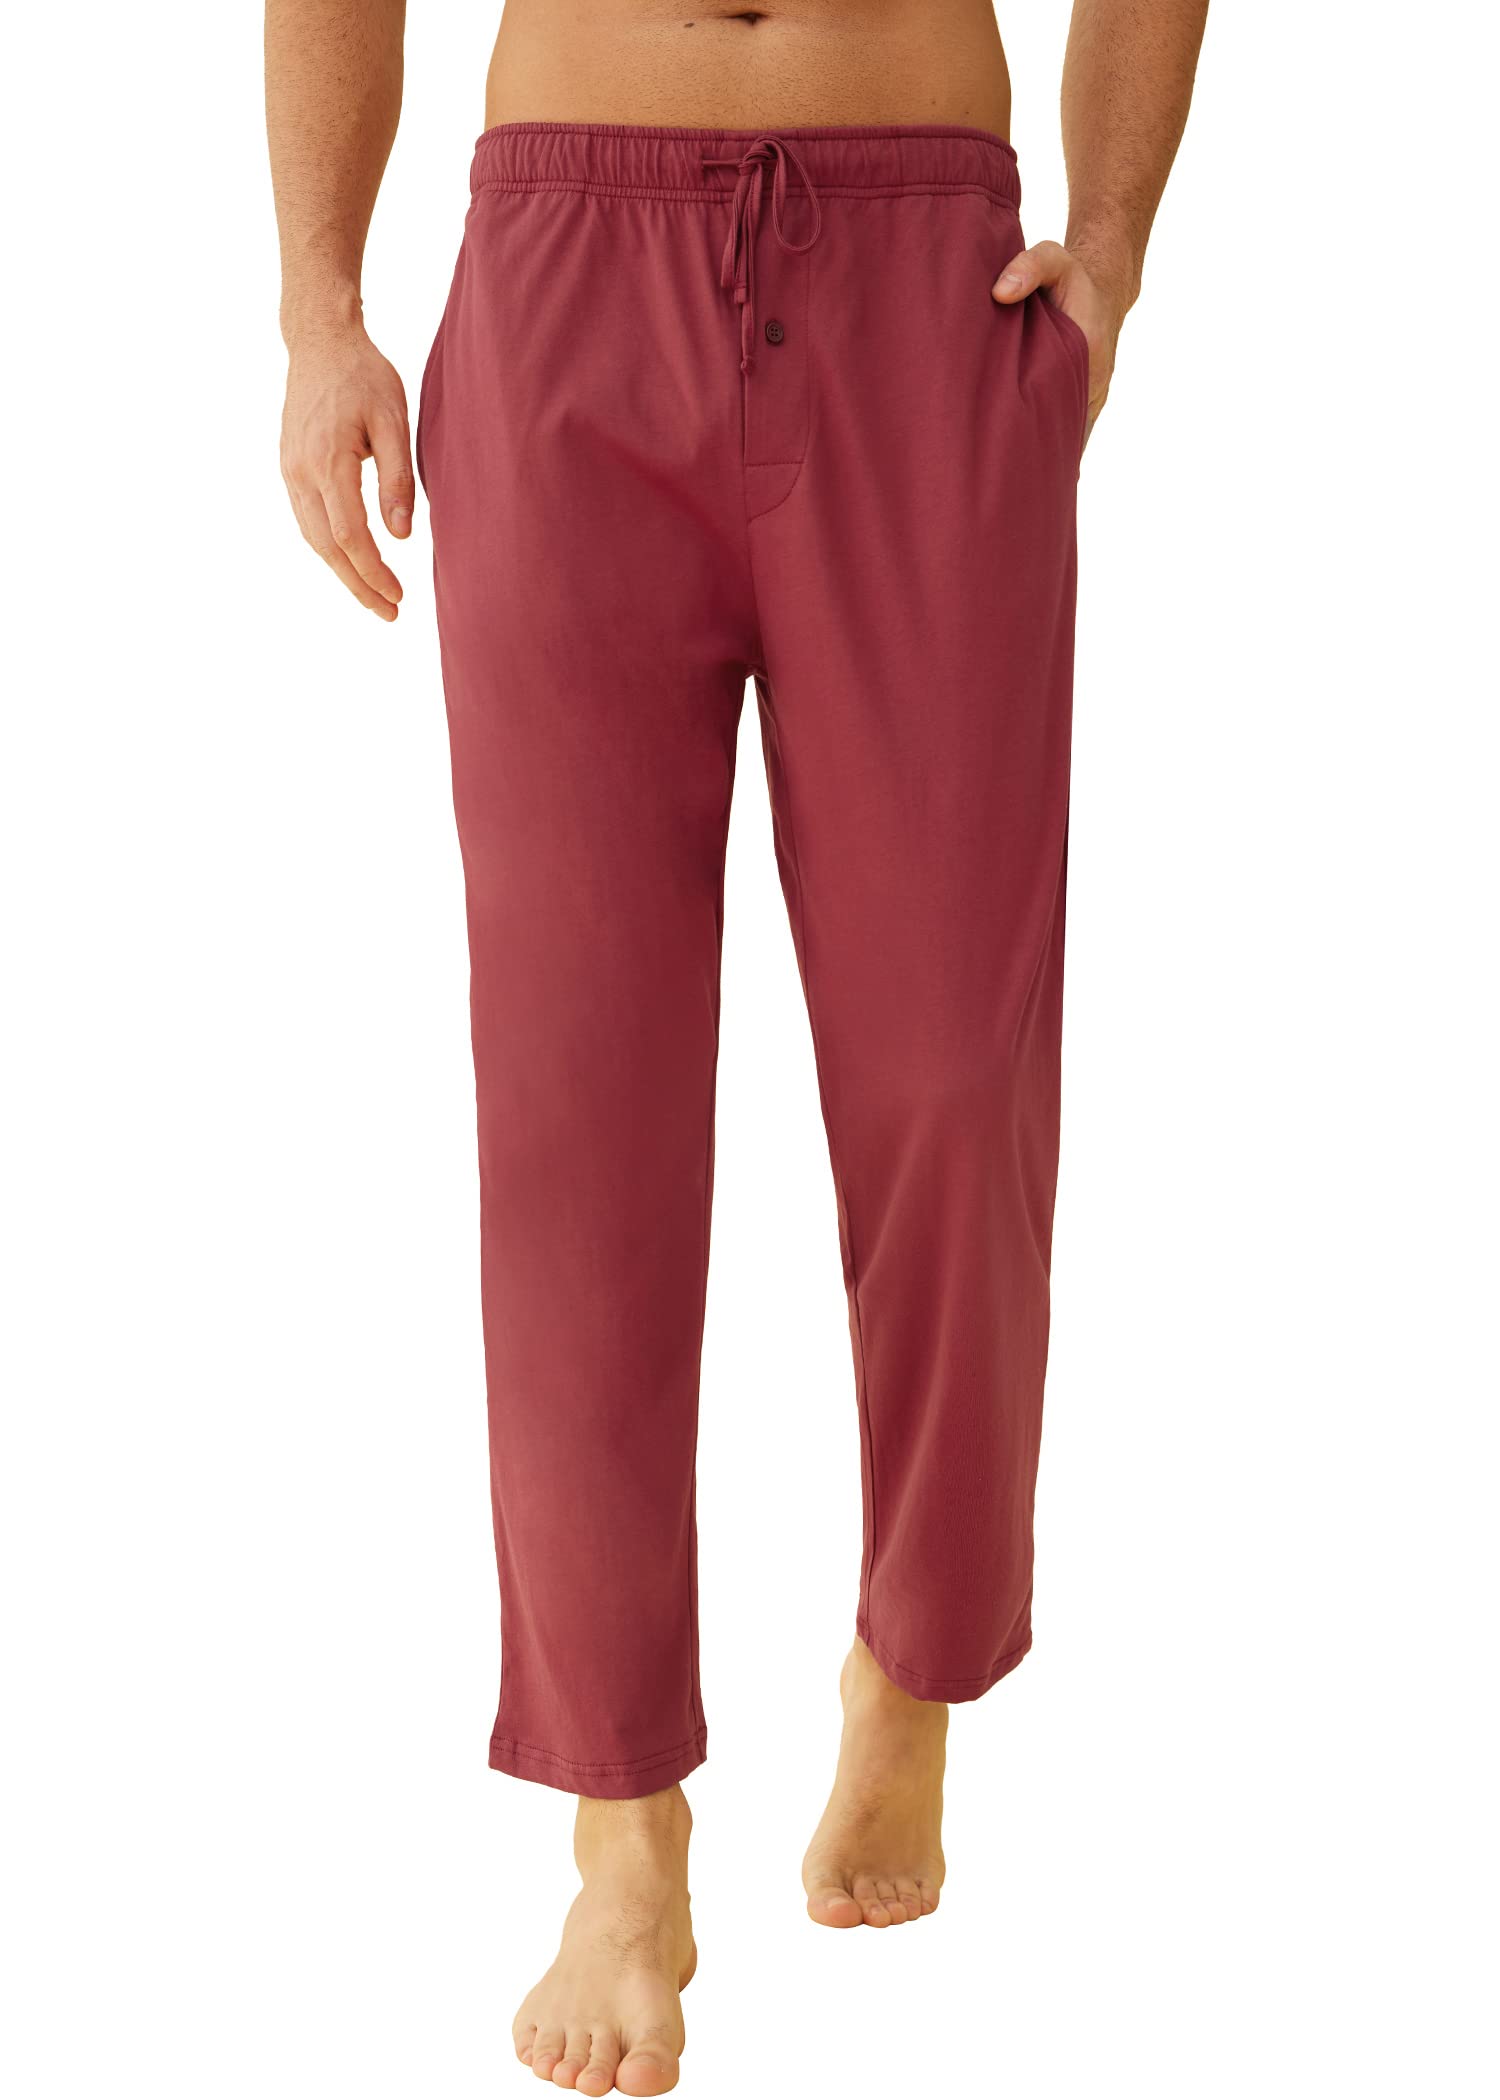 Men's Knit Cotton Lounge Pajama Pants - Latuza